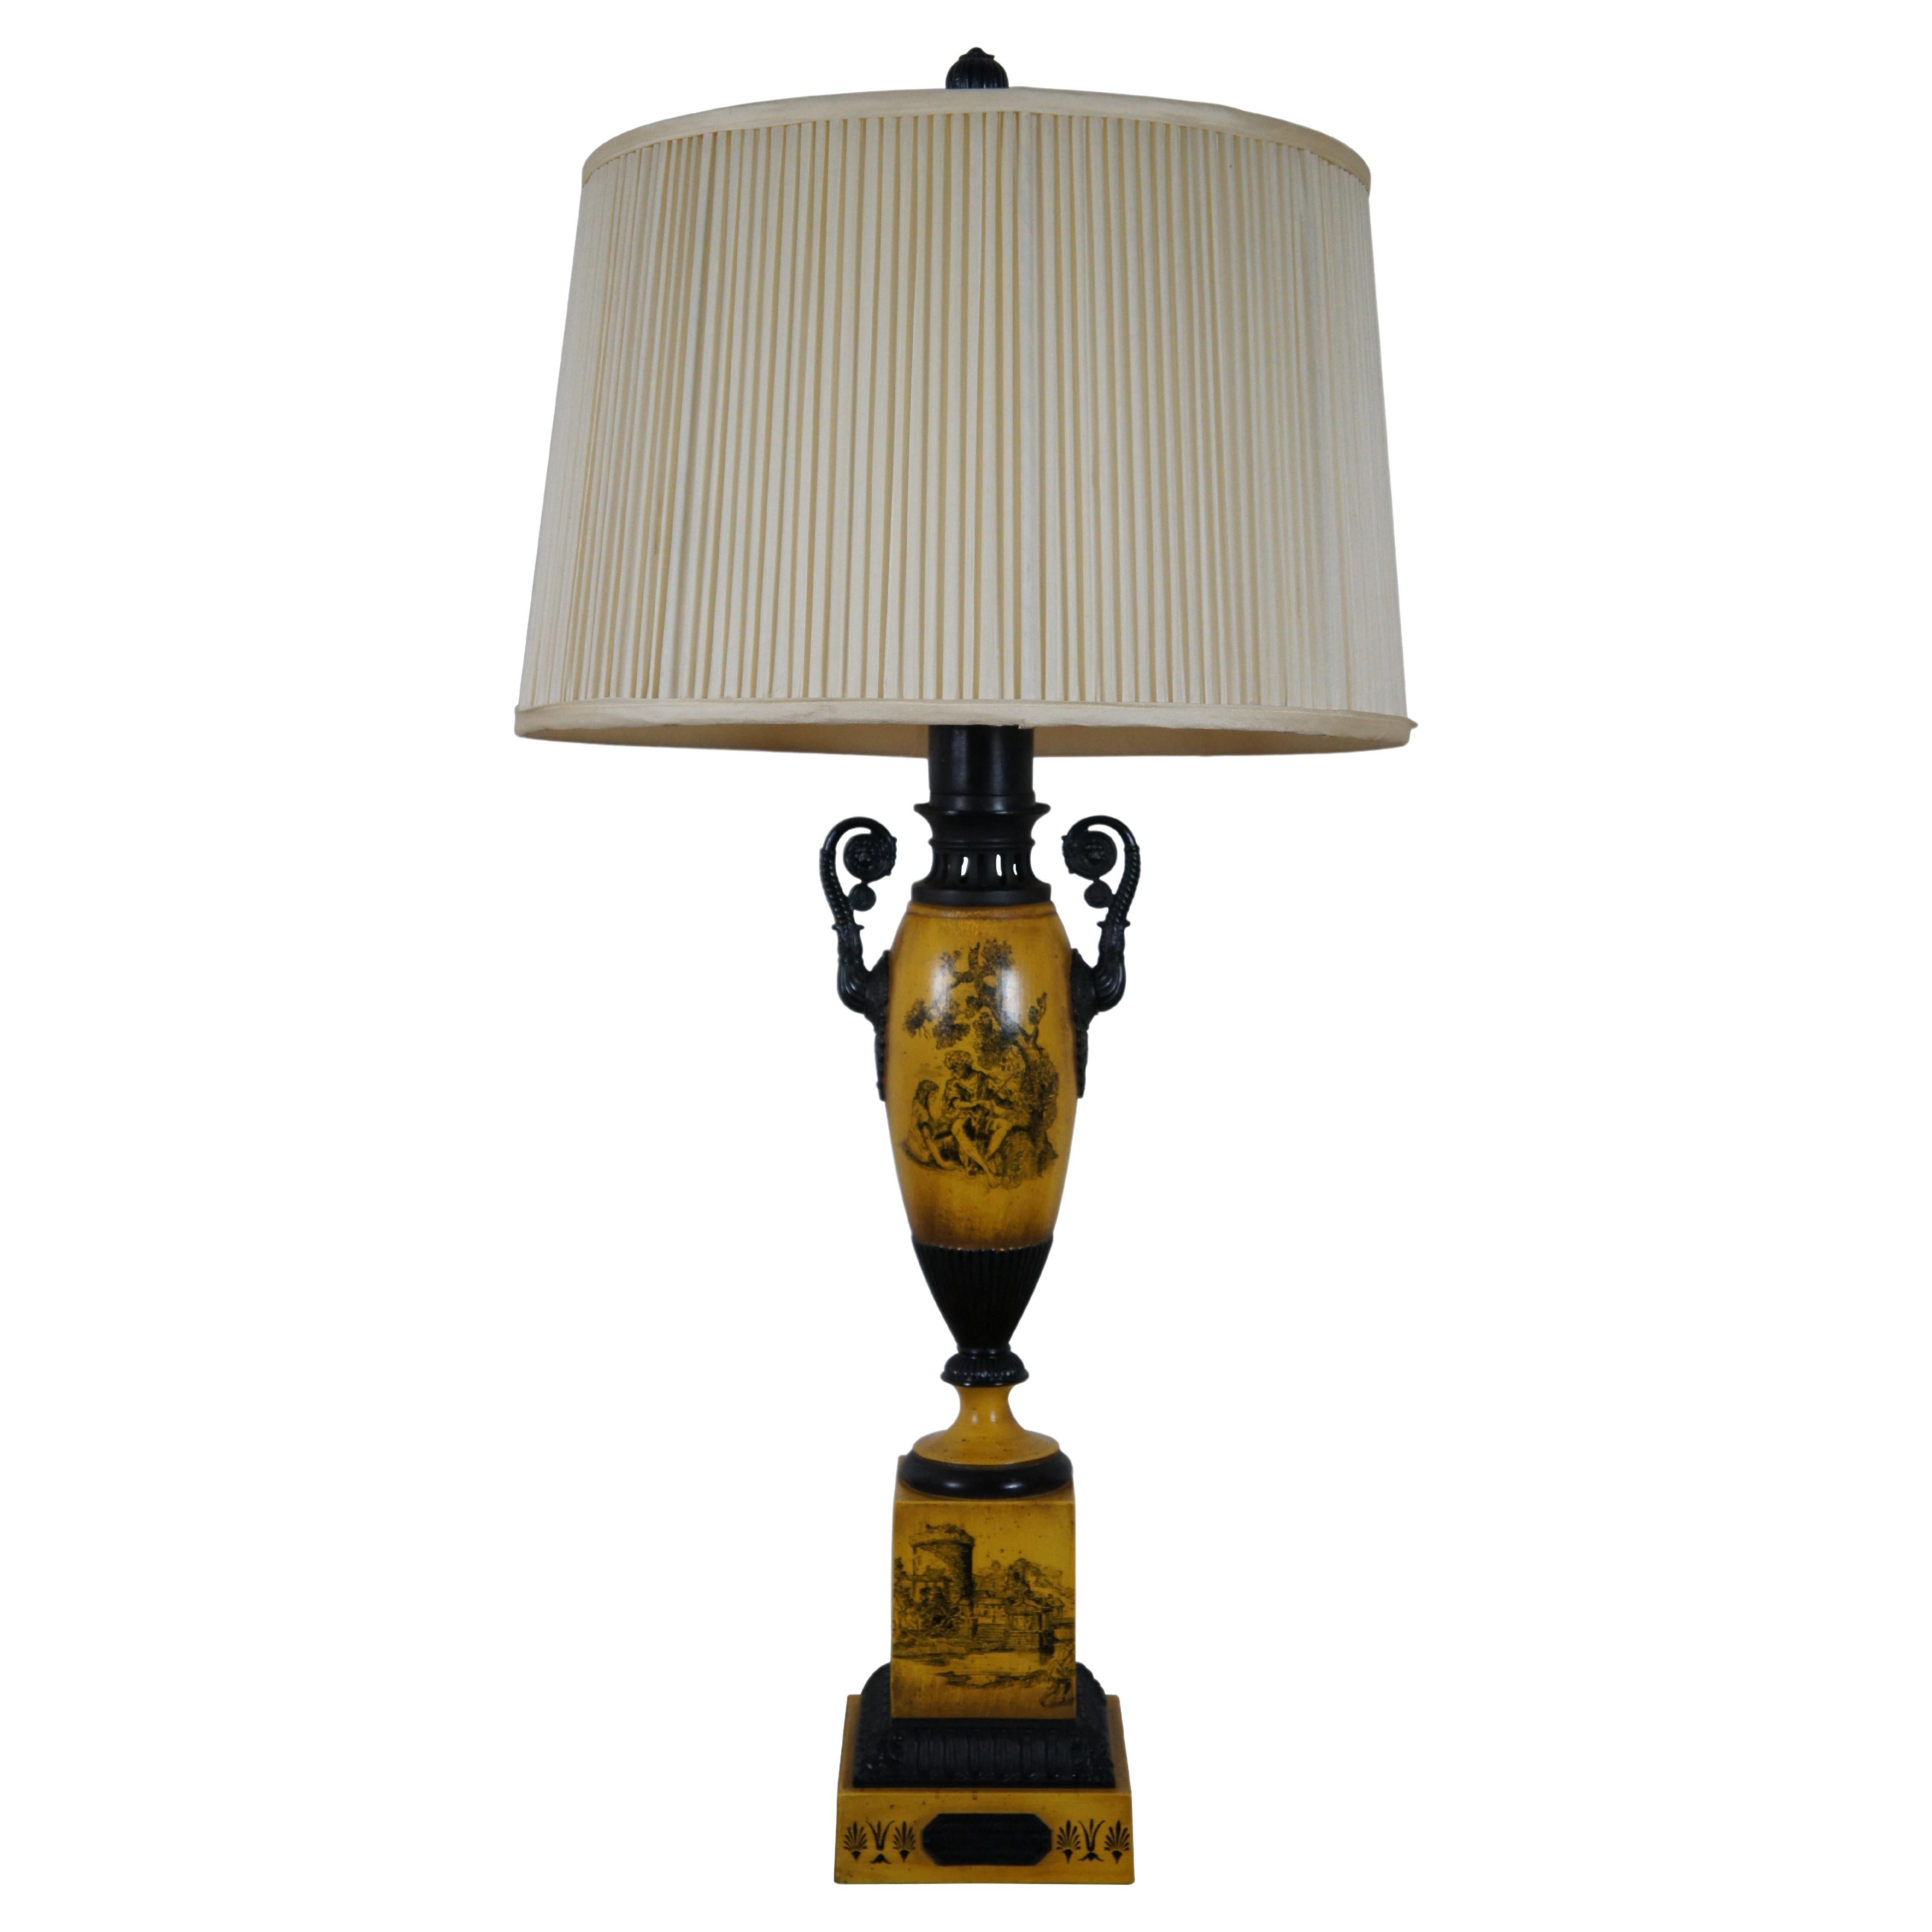 Lampe urne néoclassique en tôle jaune de style Empire français vintage